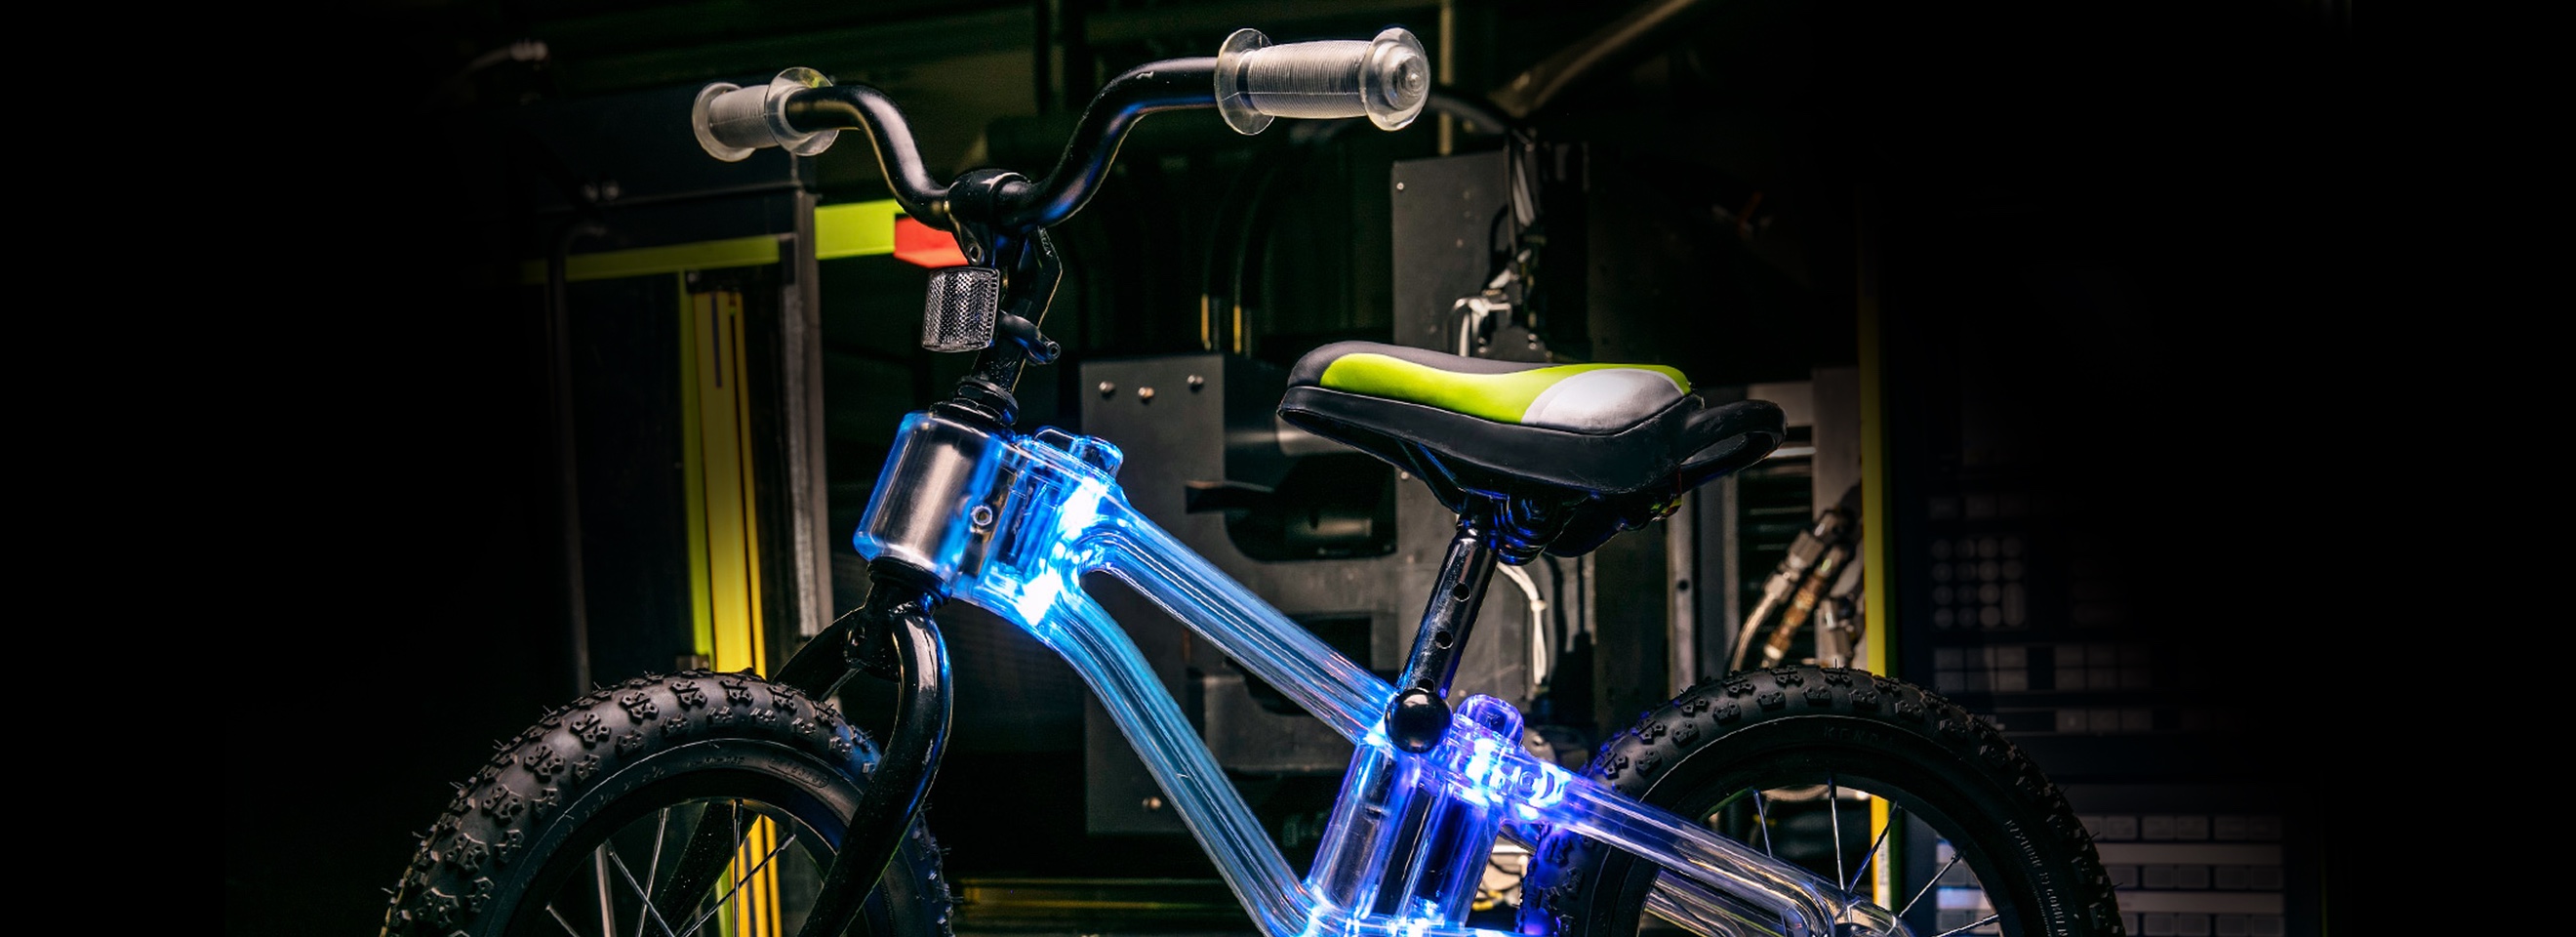 illuminated bicycle frame